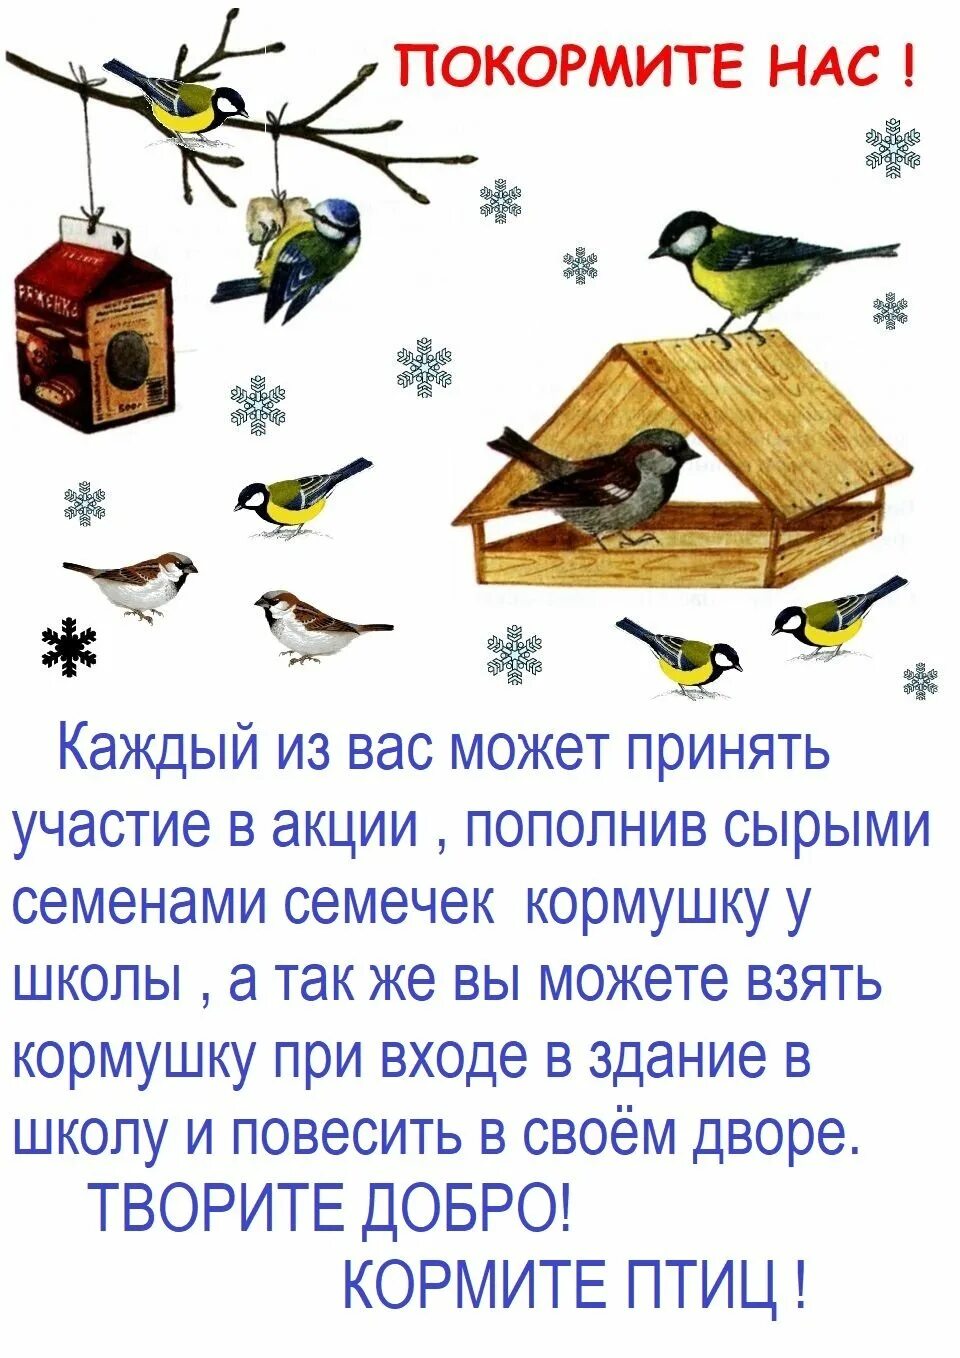 Покормите птиц зимой. Акция Покормите птиц зимой. Акйия "Покормите птиц зимой. Акция Покорми птиц зимой.